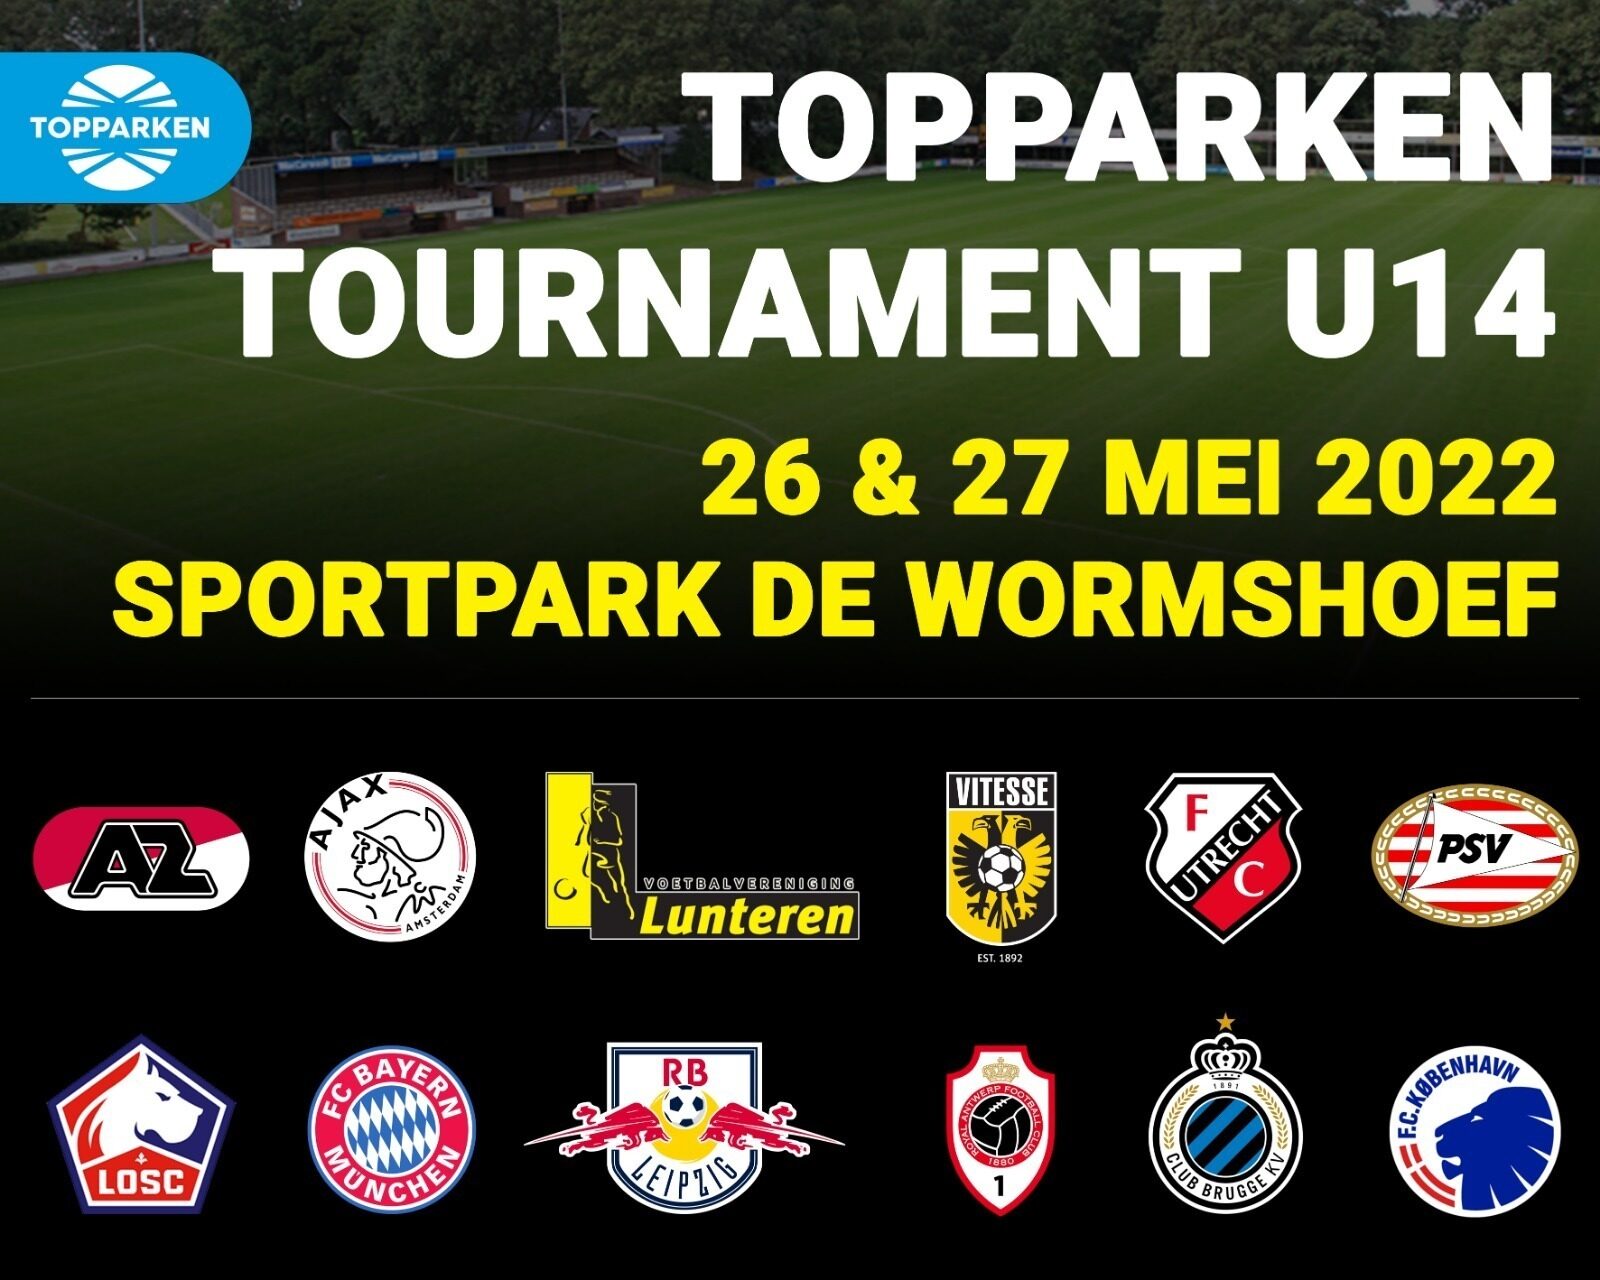 TopParken tournament under 14 years